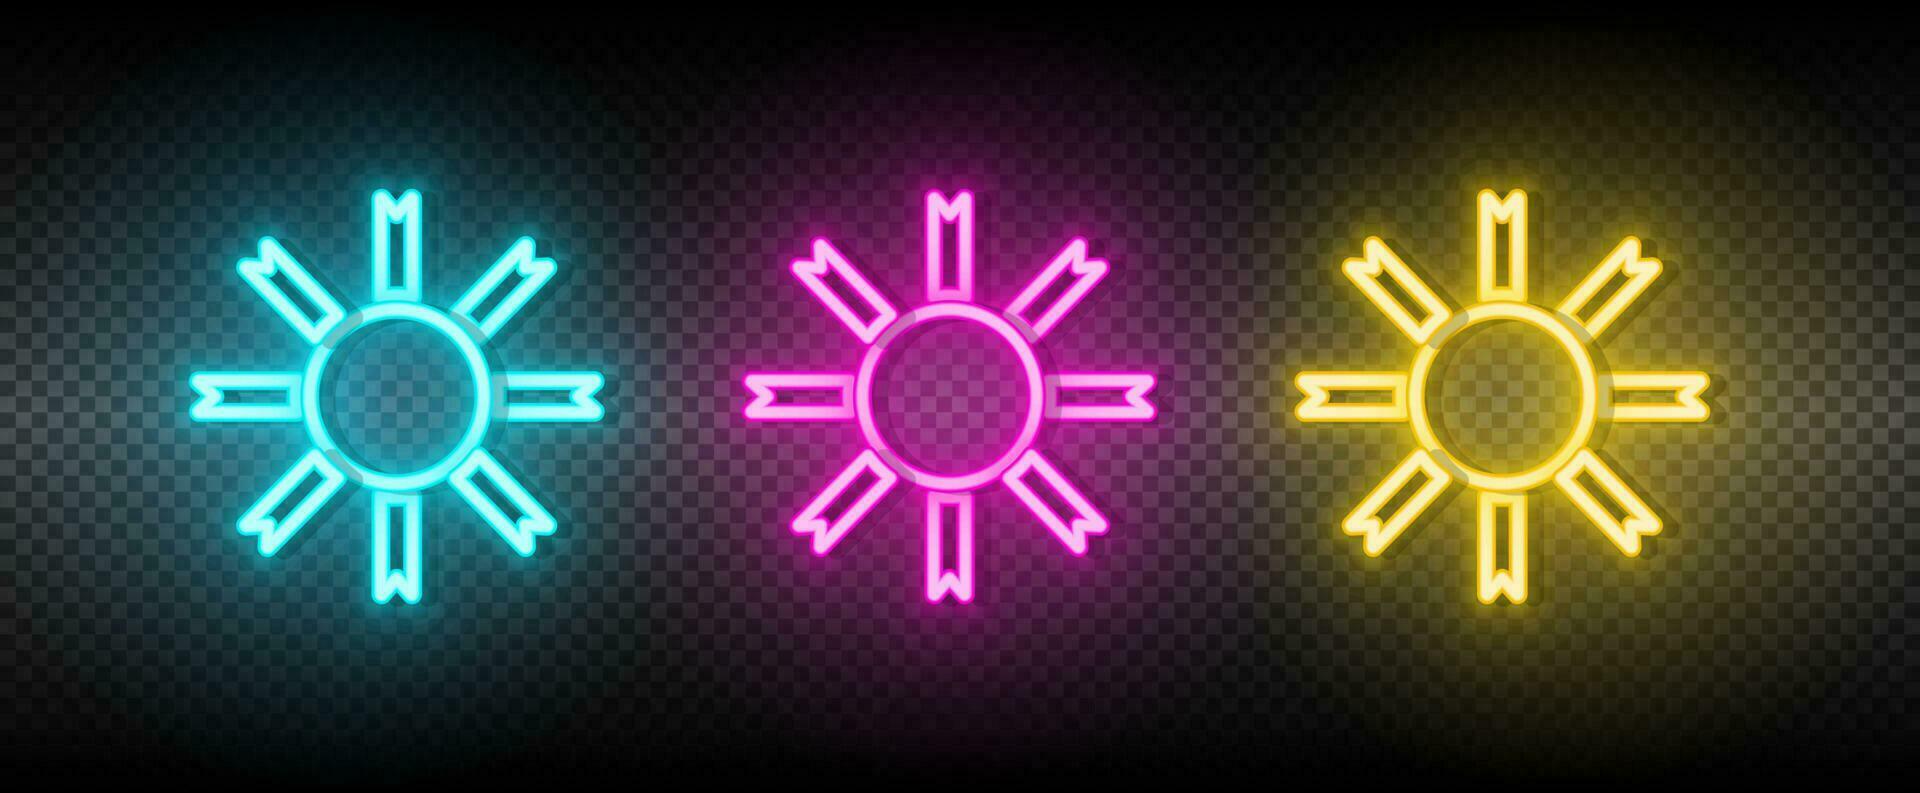 Sol blå, rosa och gul neon vektor ikon uppsättning.